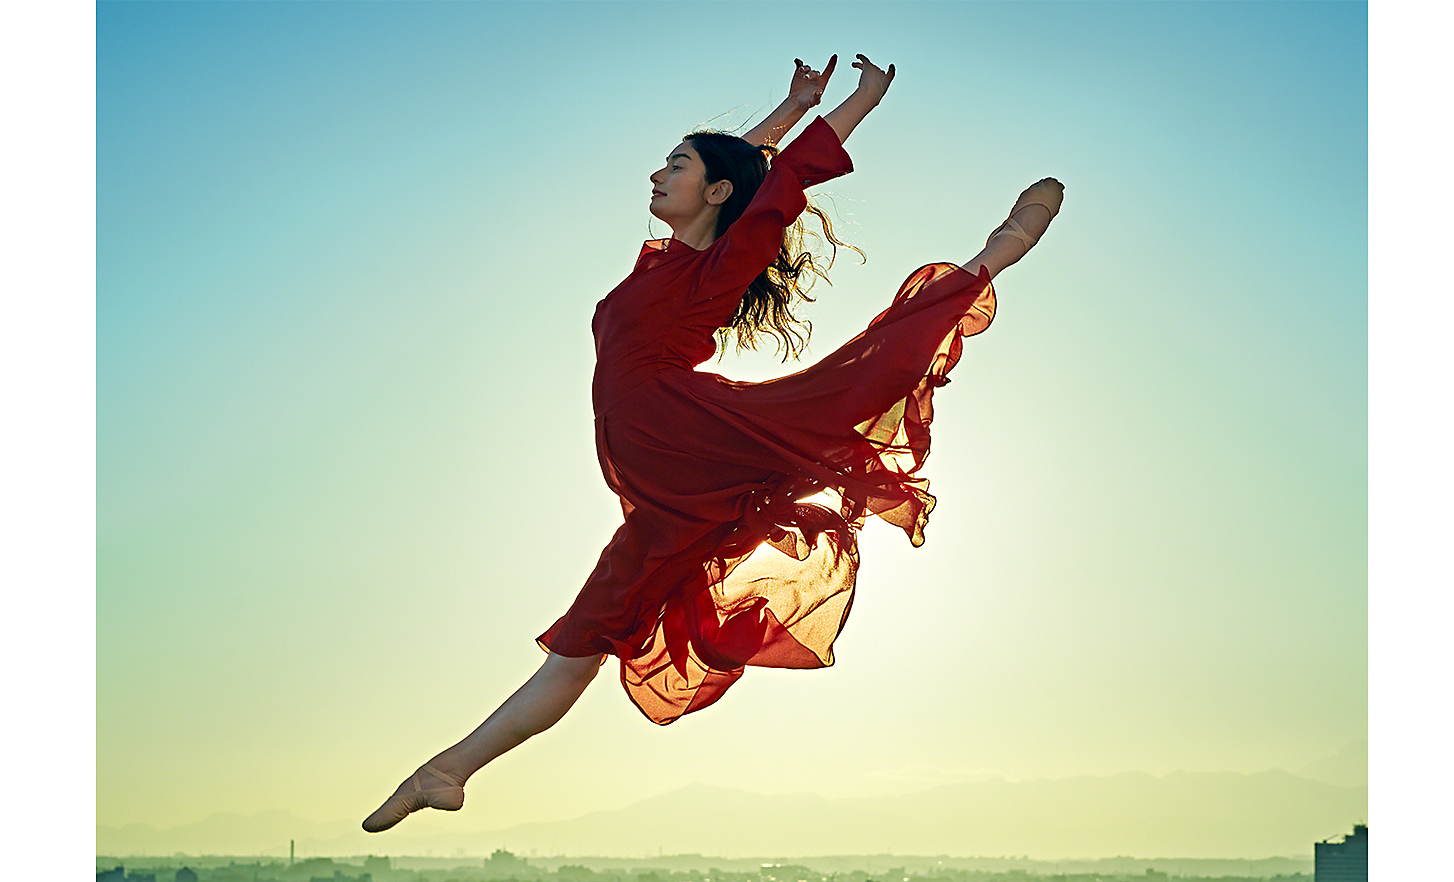 Una bailarina saltando con un vestido rojo